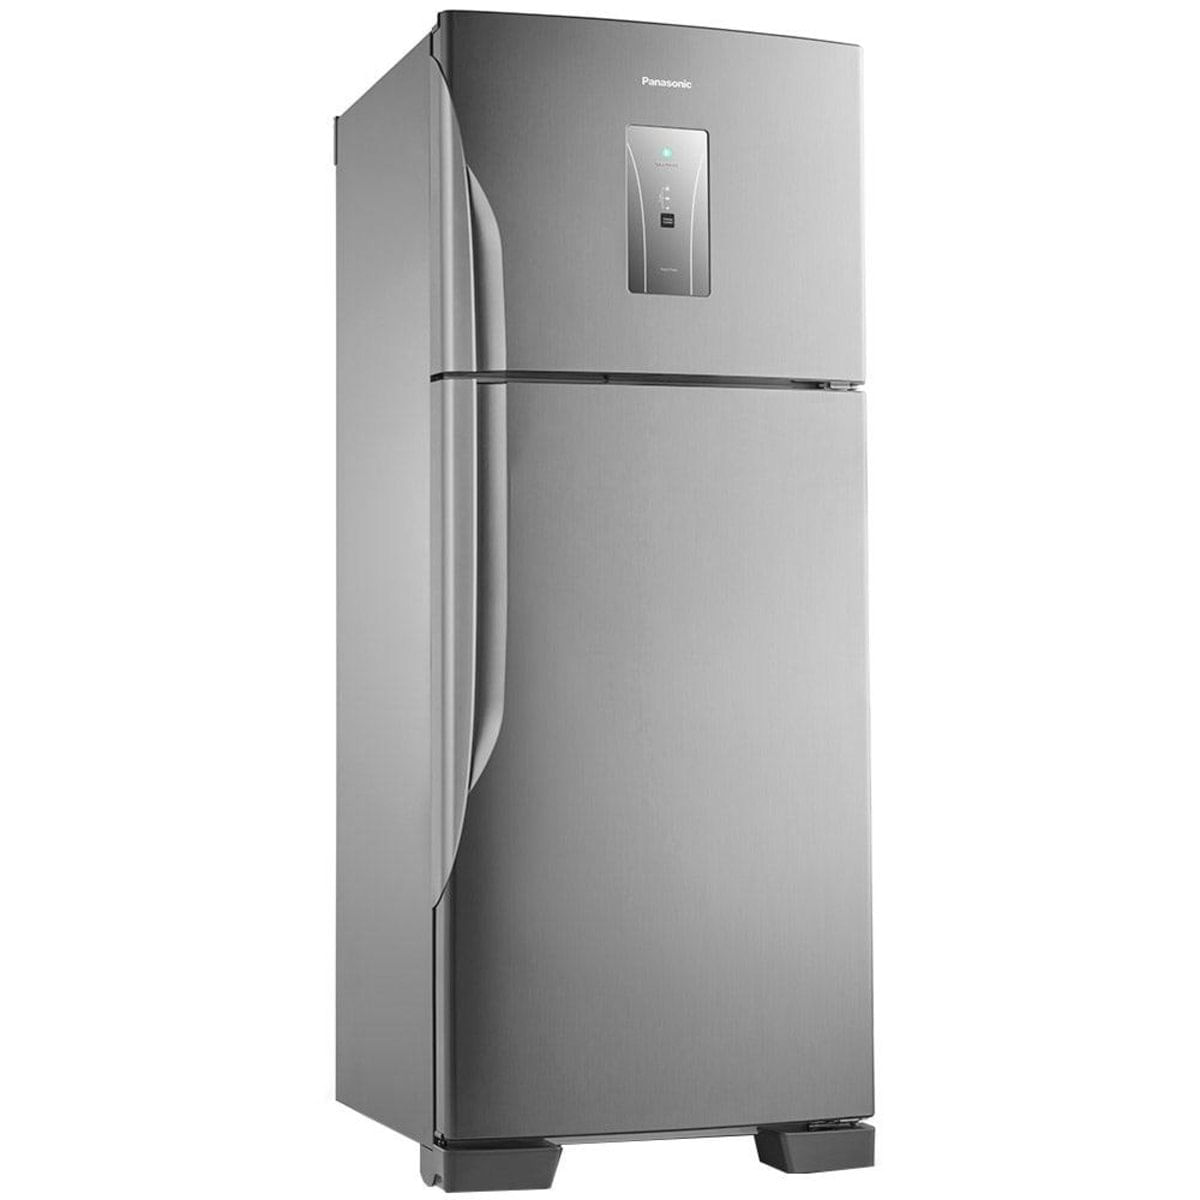 Geladeira/Refrigerador Panasonic 435 Litros Nr-Bt50, Frost Free, 2 Portas, Econavi, Aço Escovado, 220V